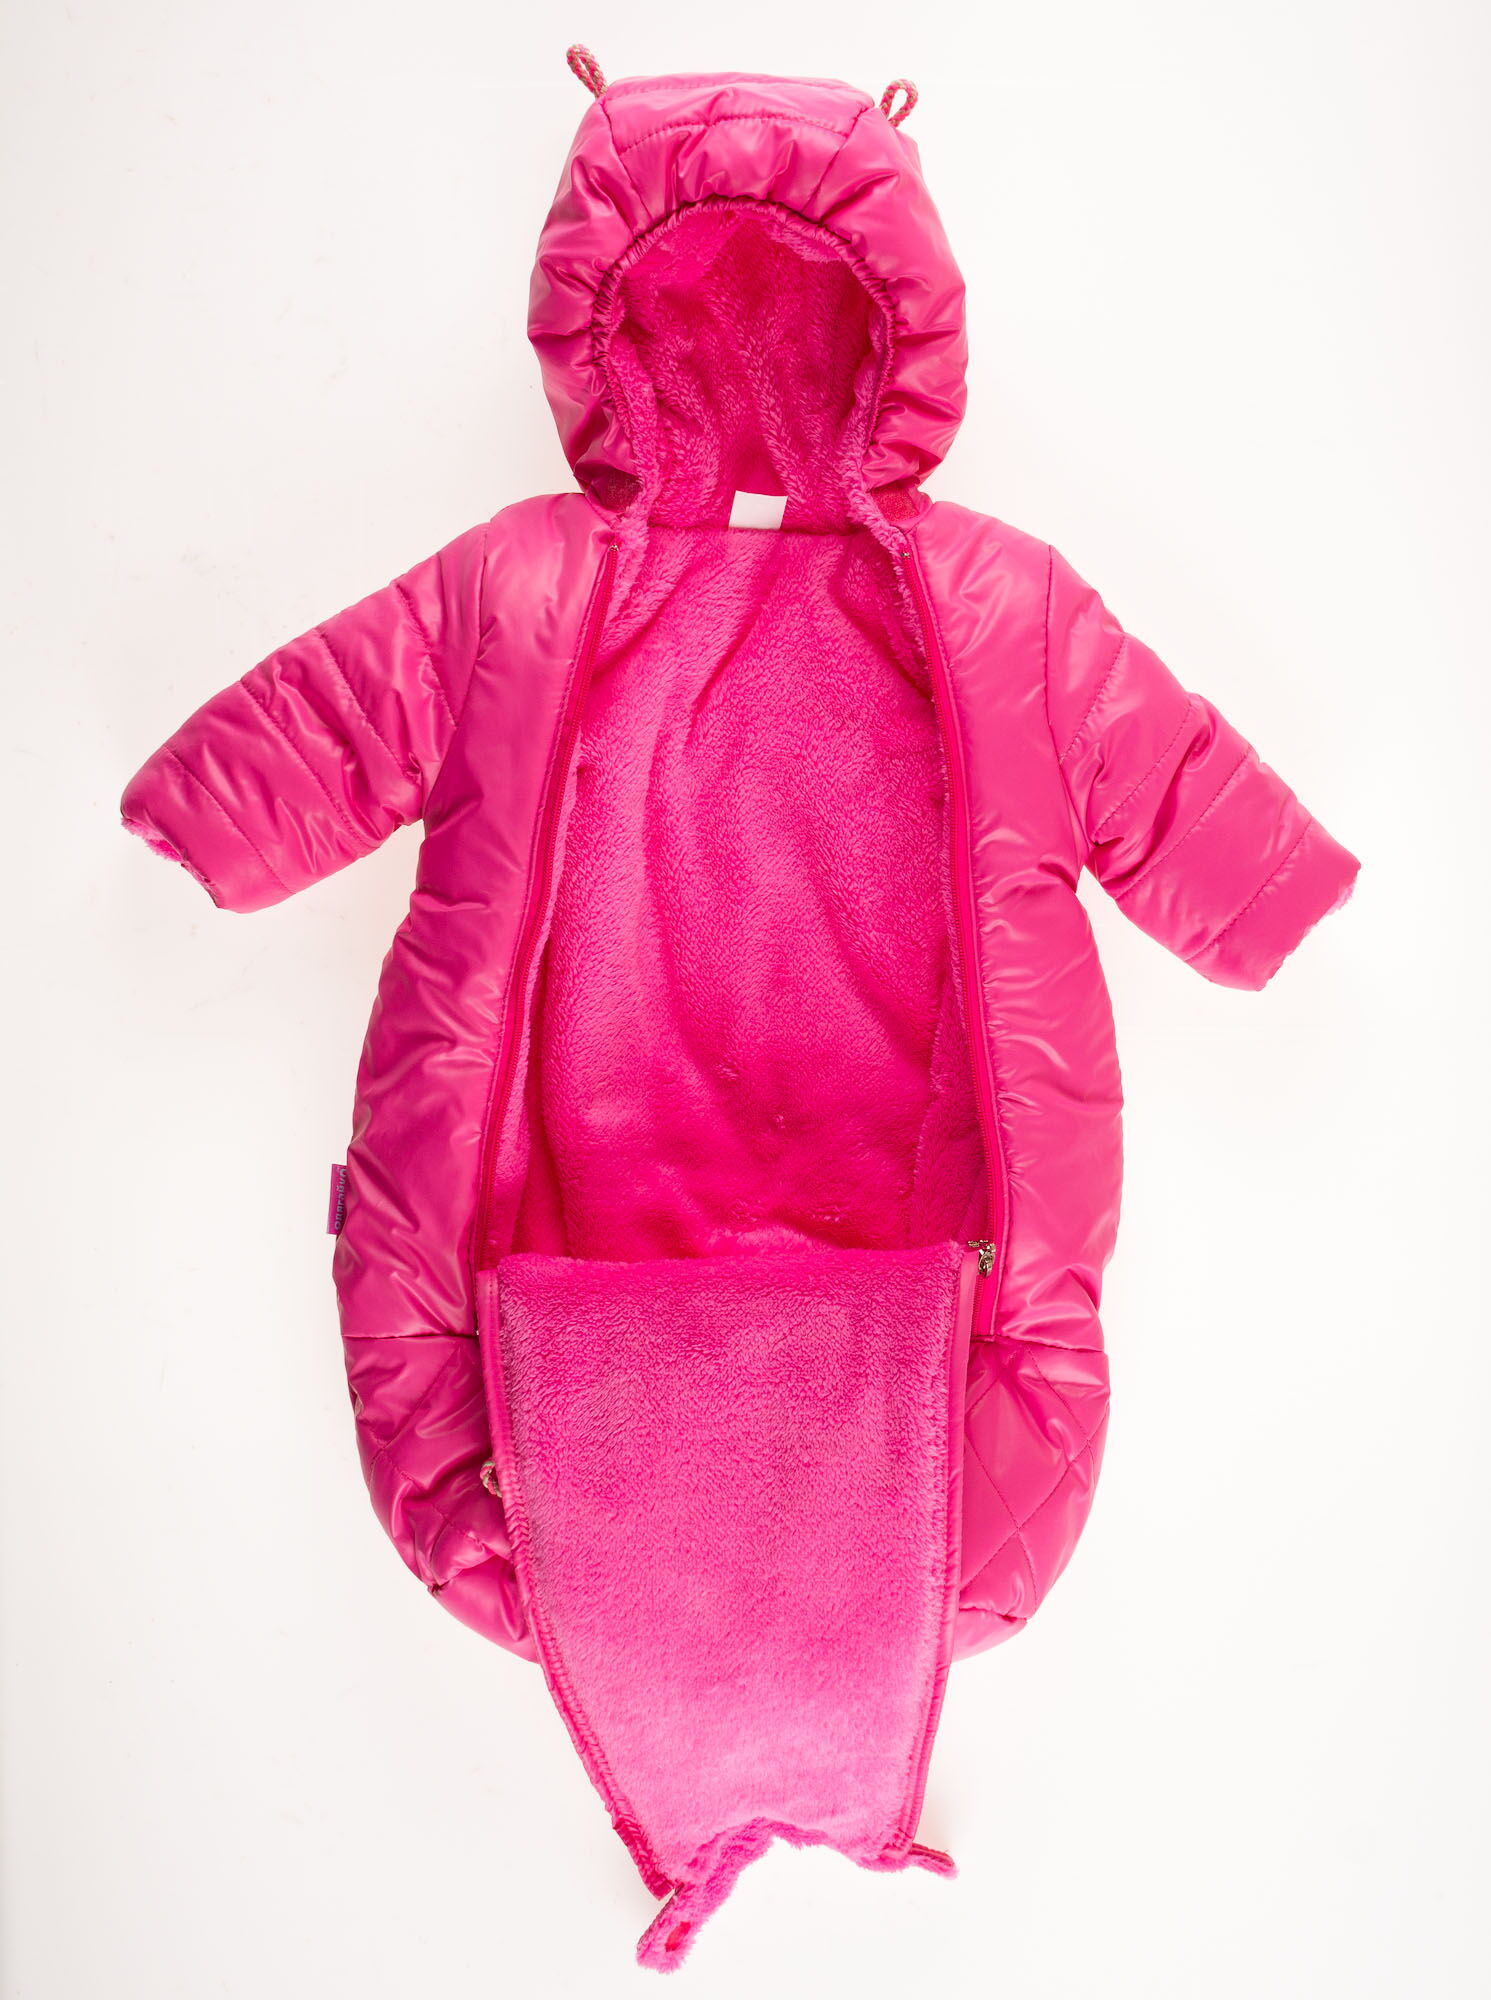 Конверт зимний для девочки Одягайко розовый 3204О - размеры